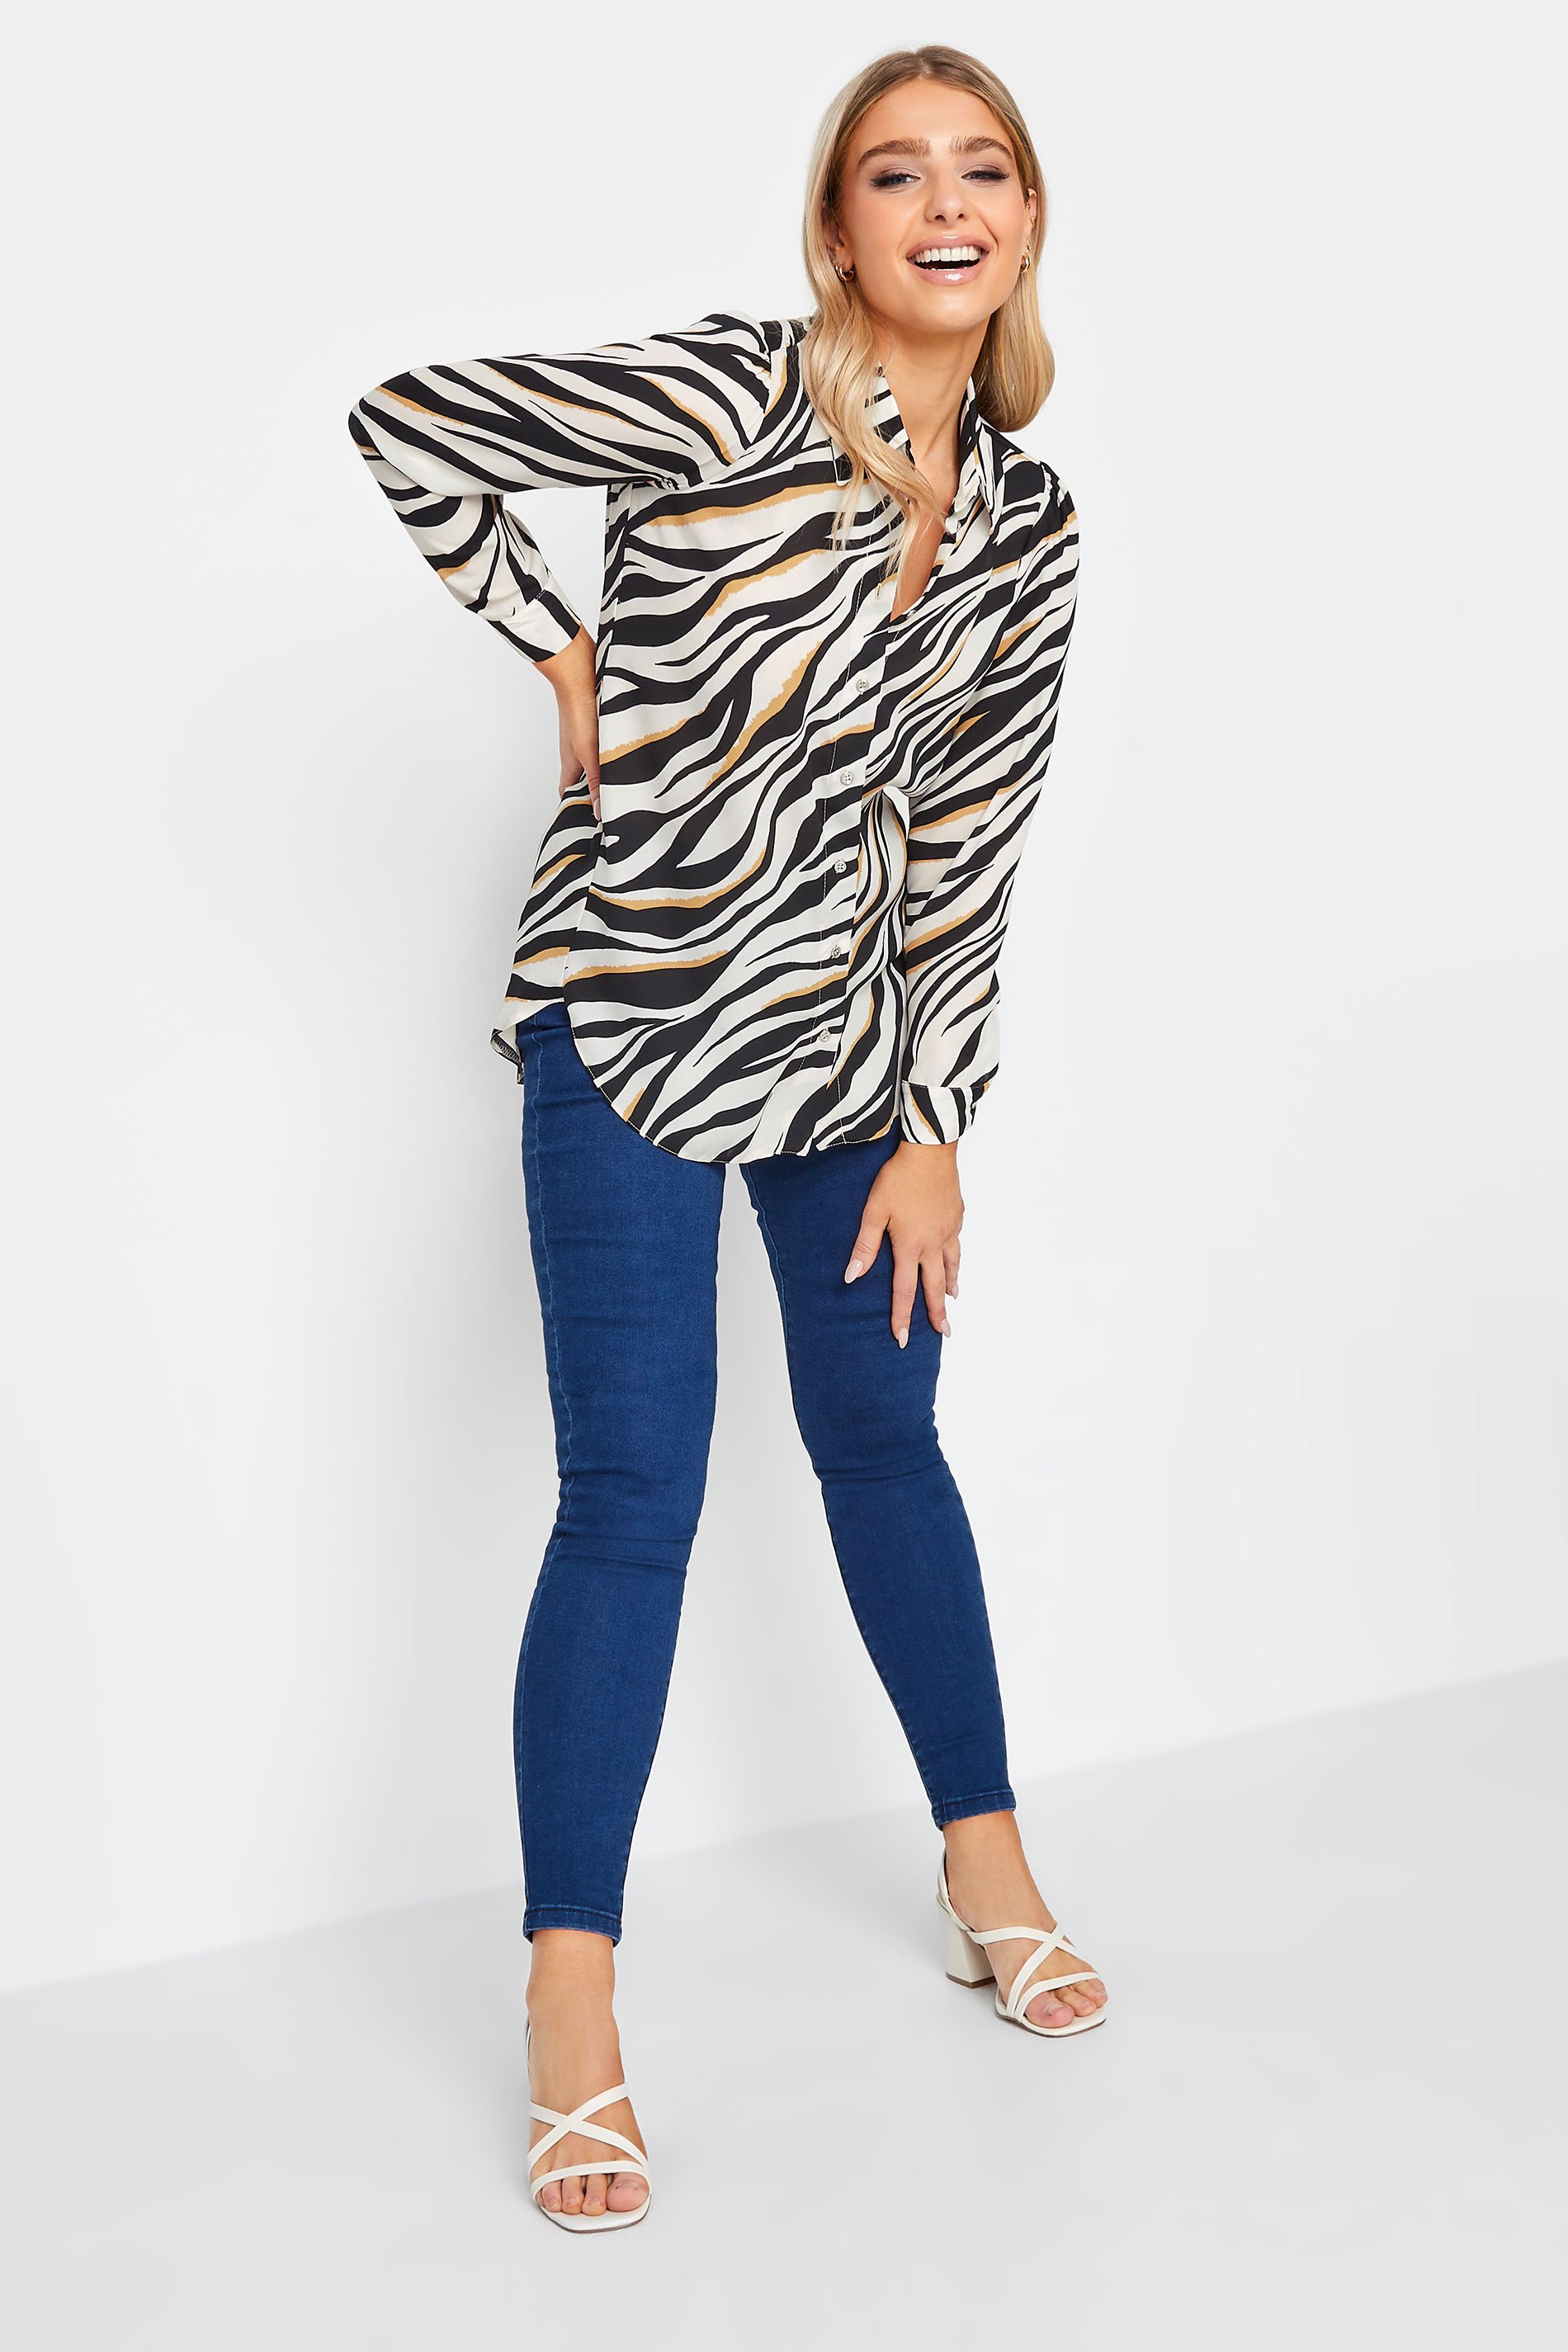 M&Co White Zebra Print Tunic Shirt | M&Co  2